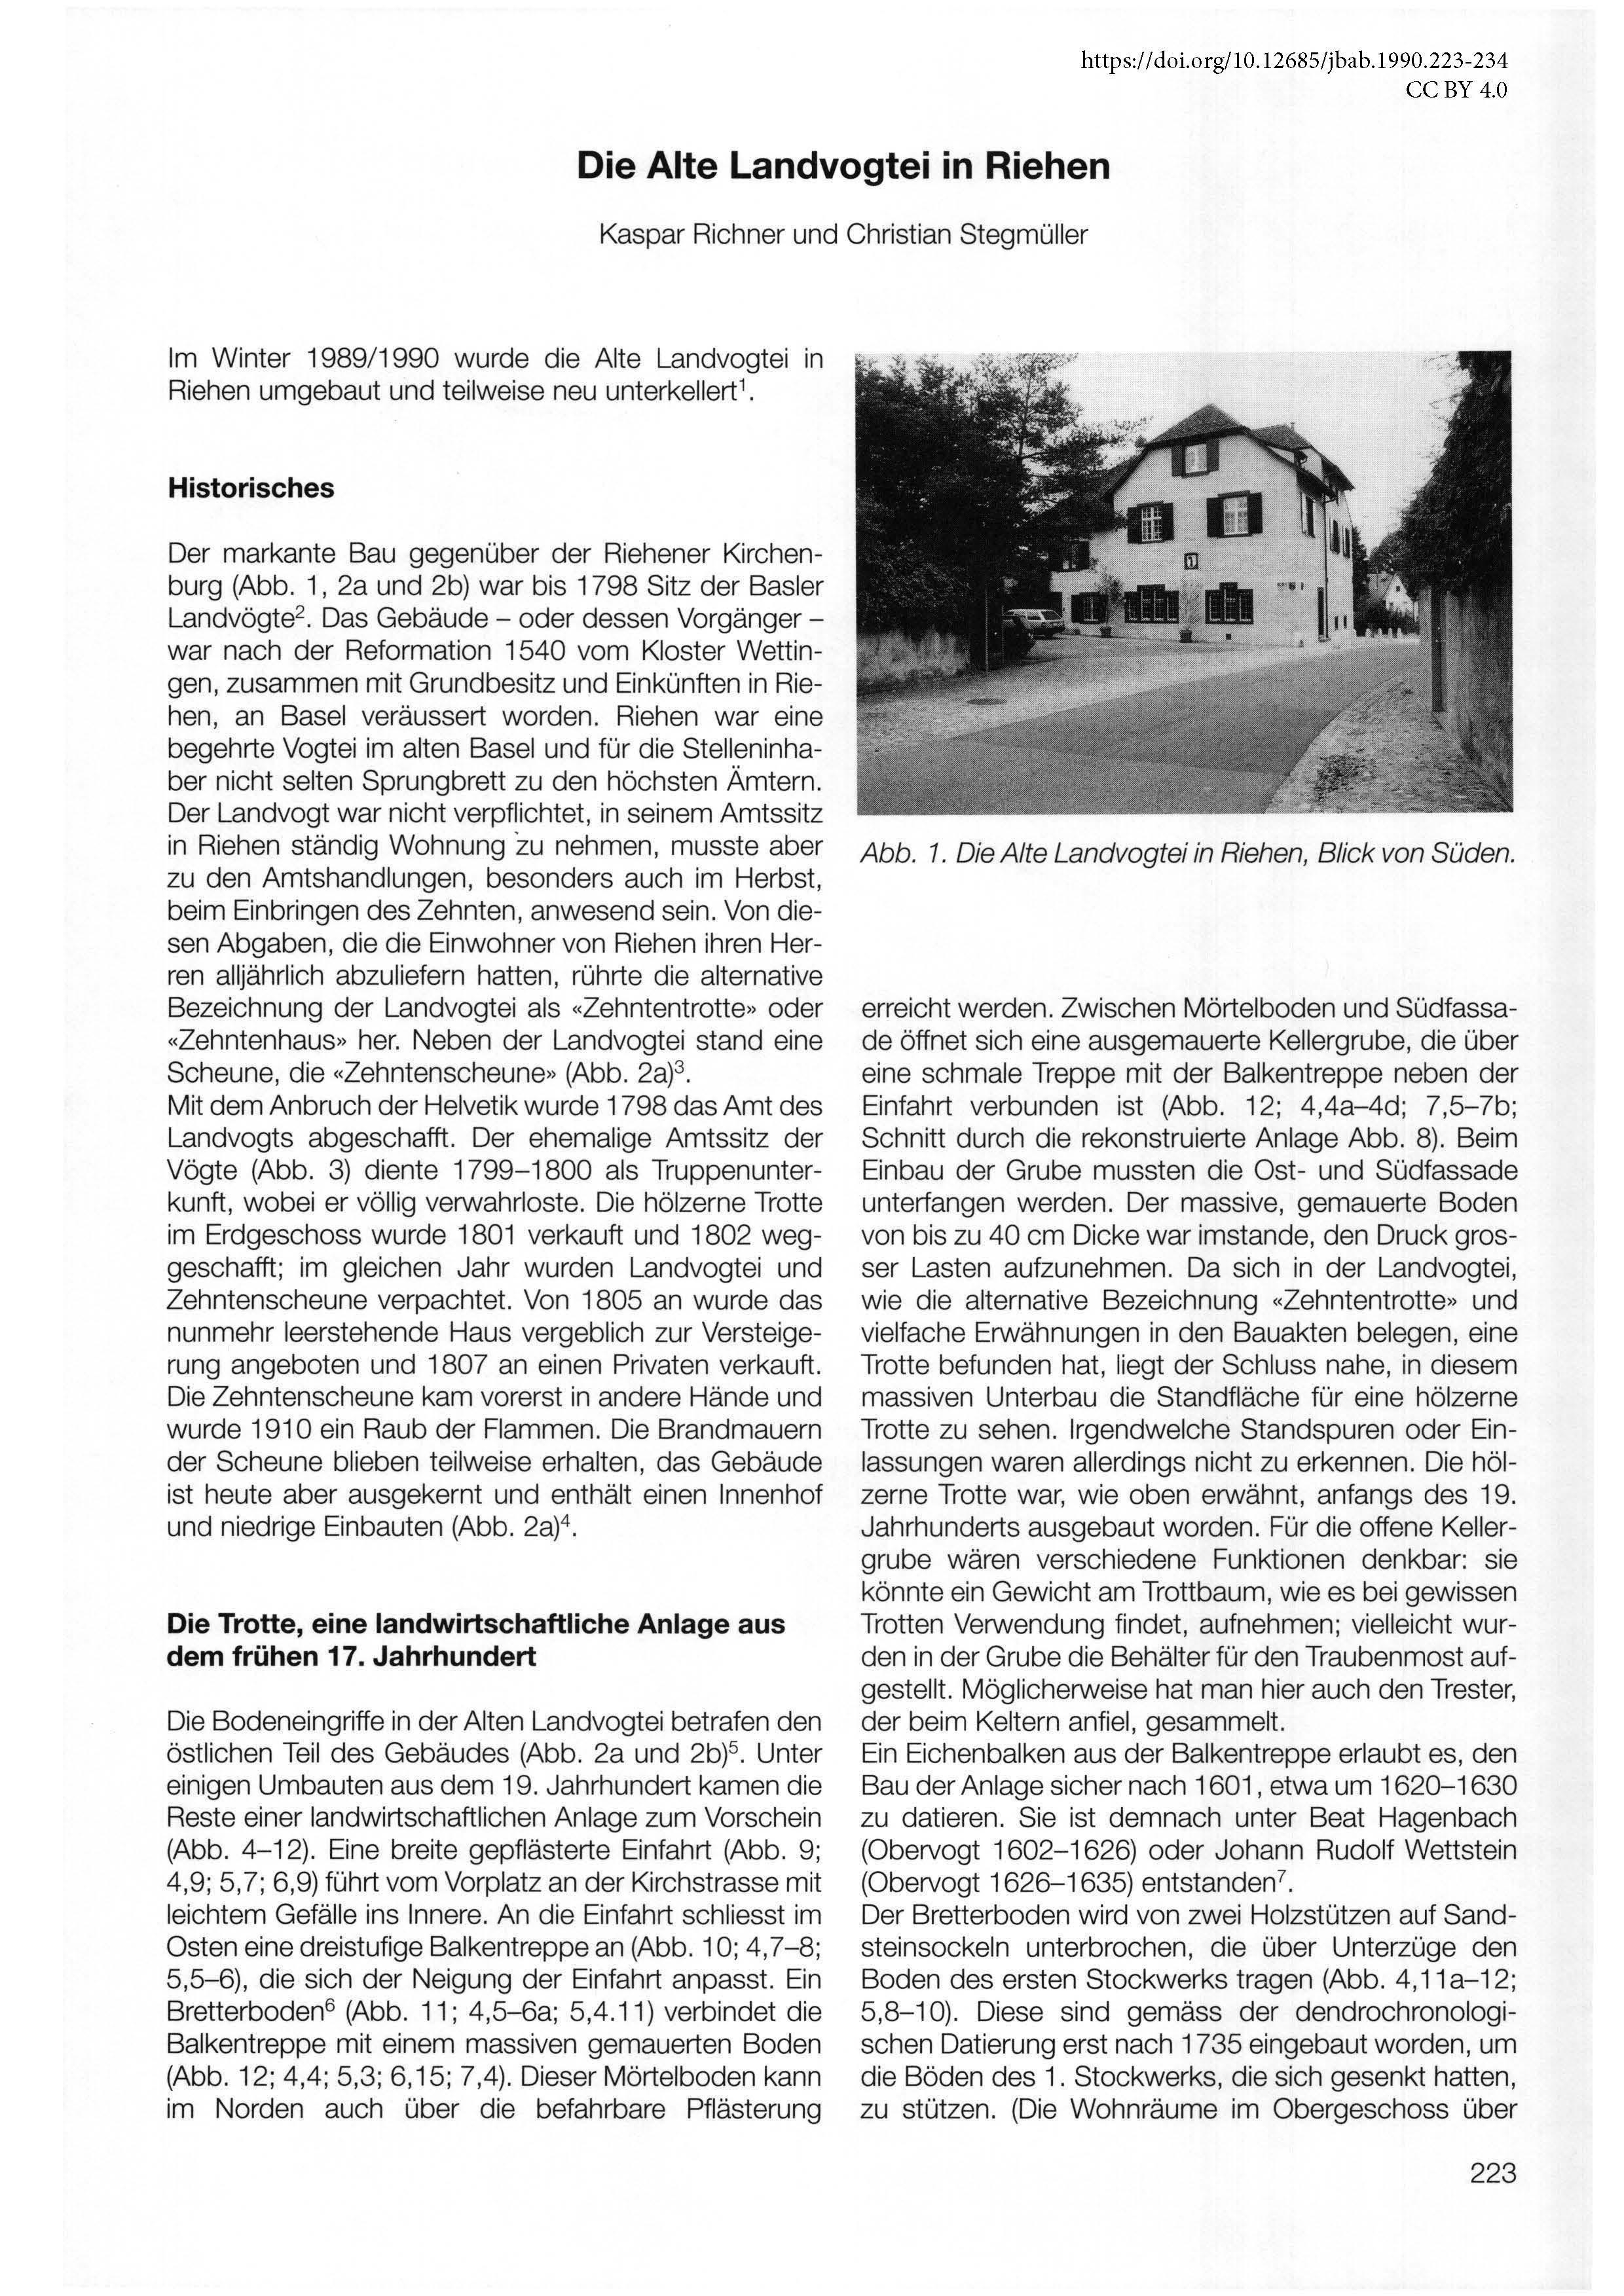 Erste Seite des Artikels über die Alte Landvogtei in Riehen